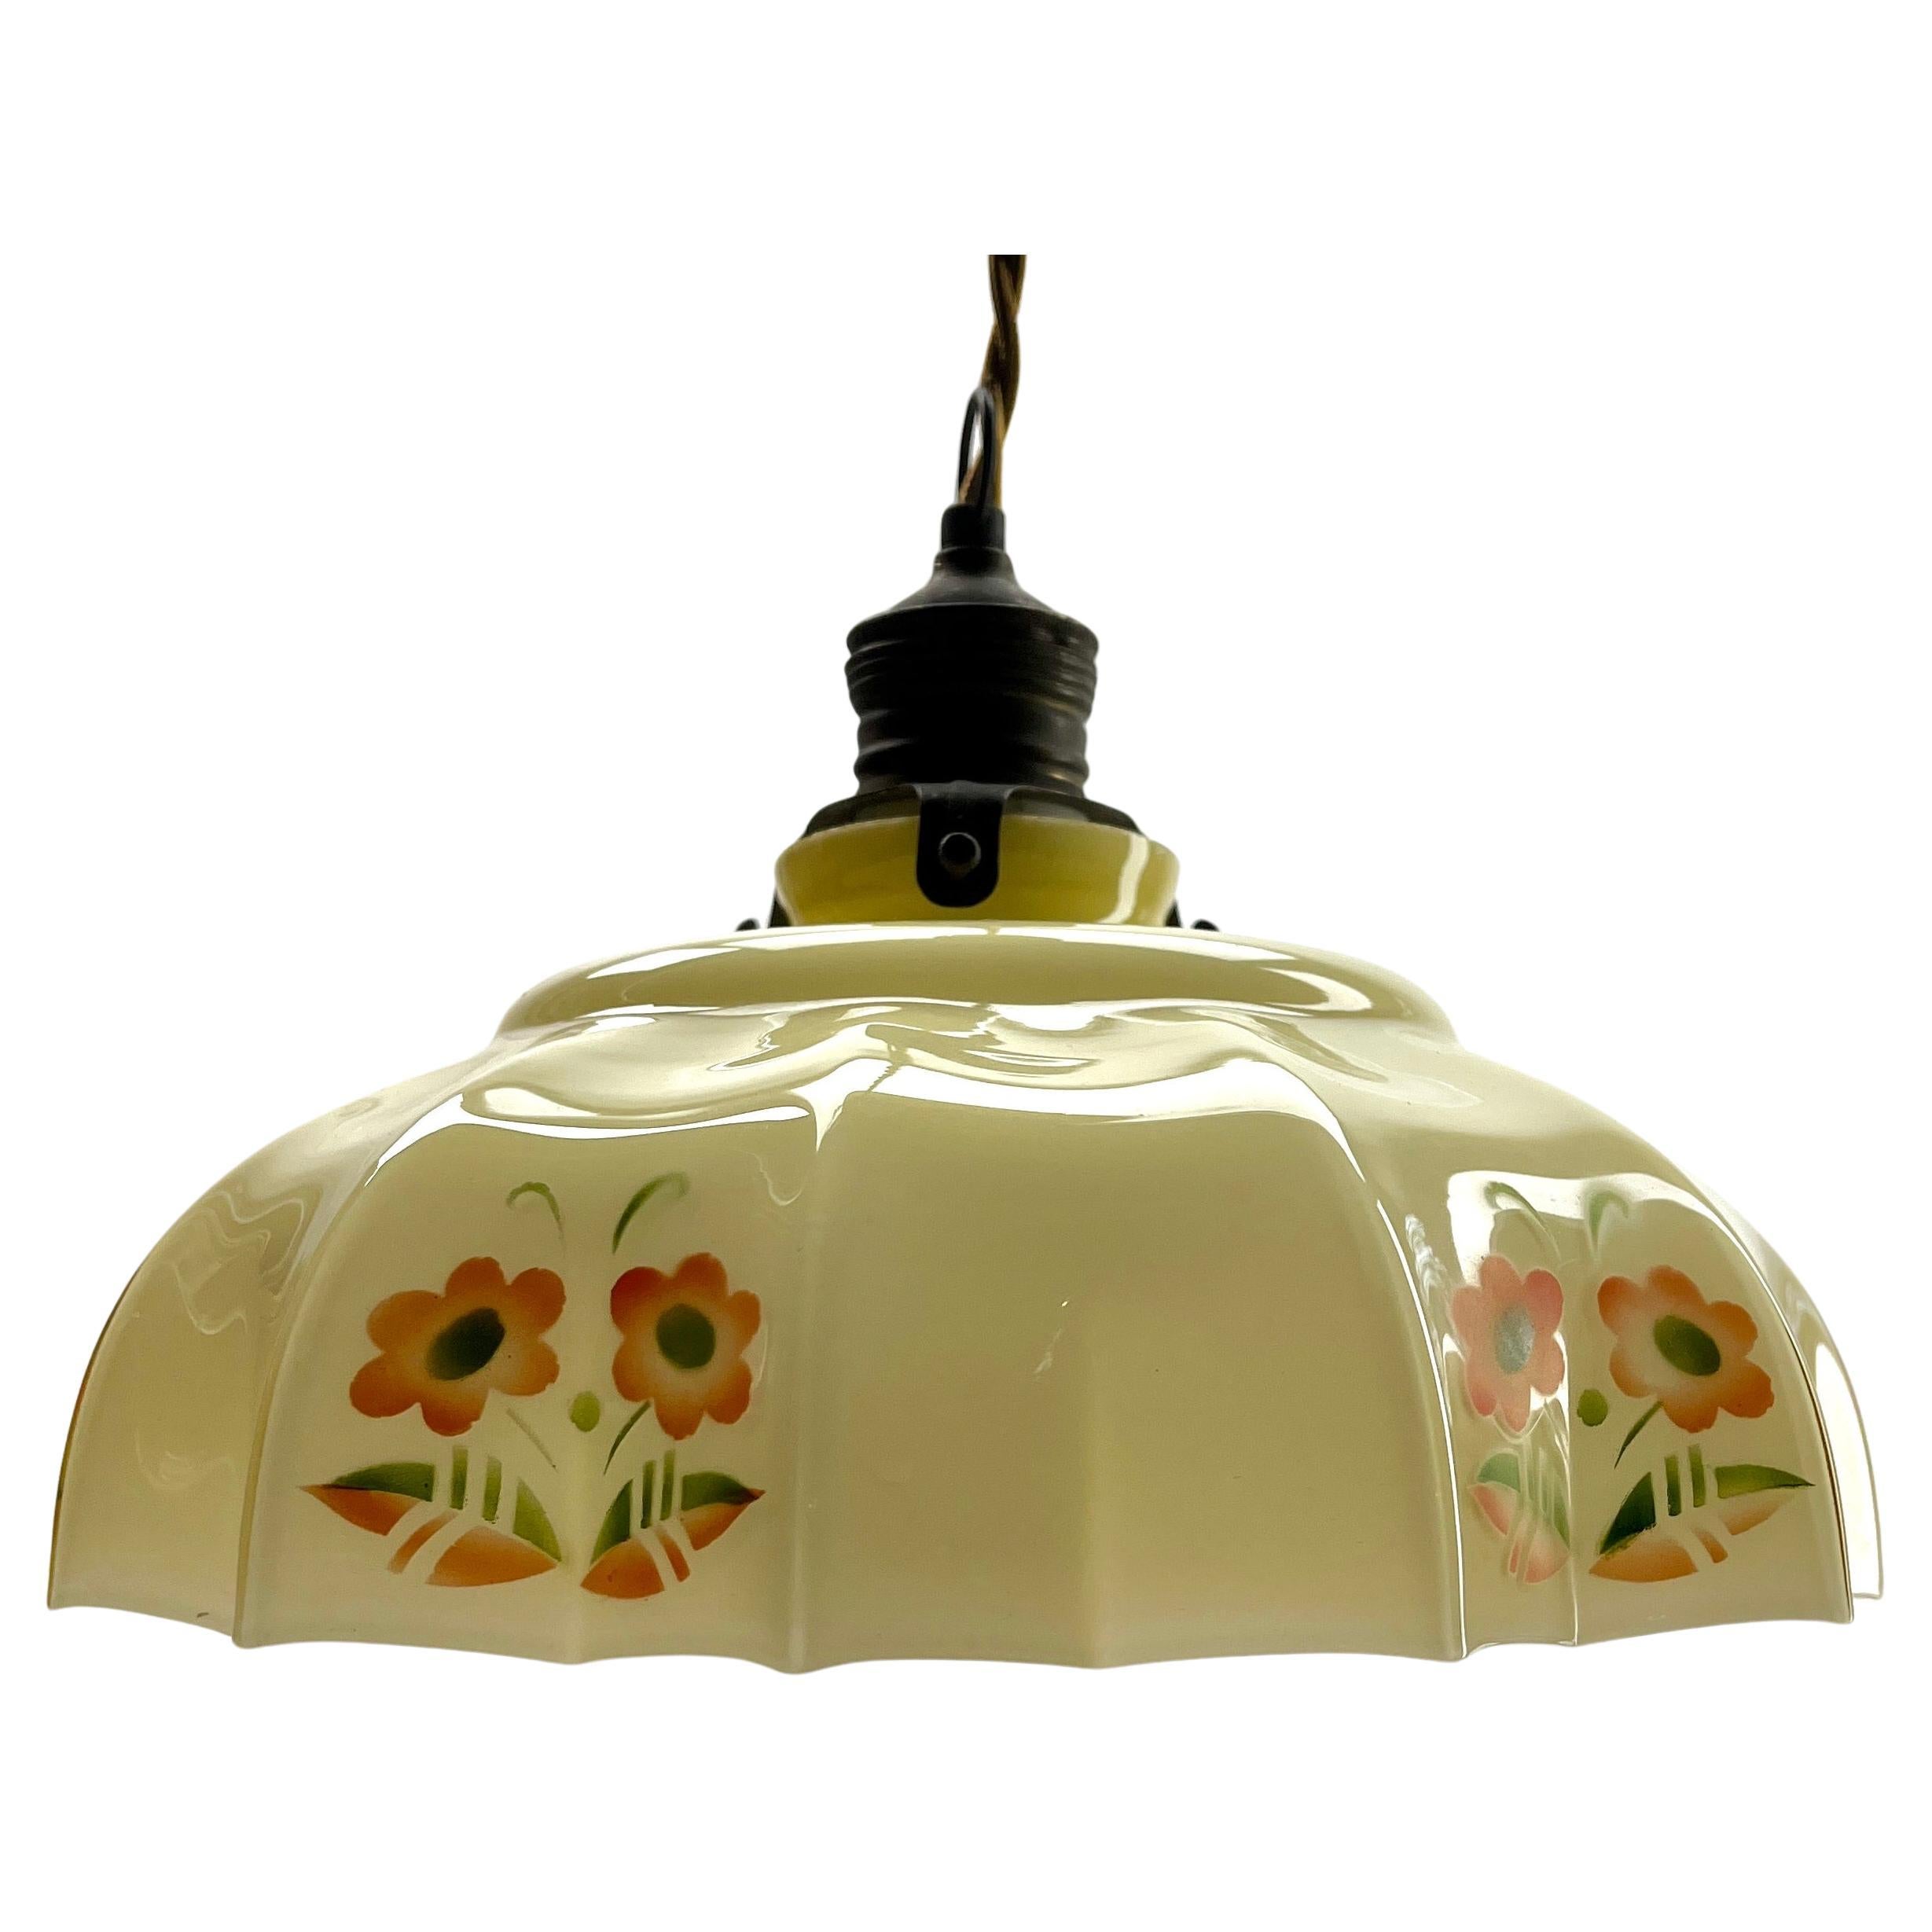 Belgian Art Nouveau Opaline Ceiling Lamp, Scailmont Belgium Glass Shade, 1930s For Sale